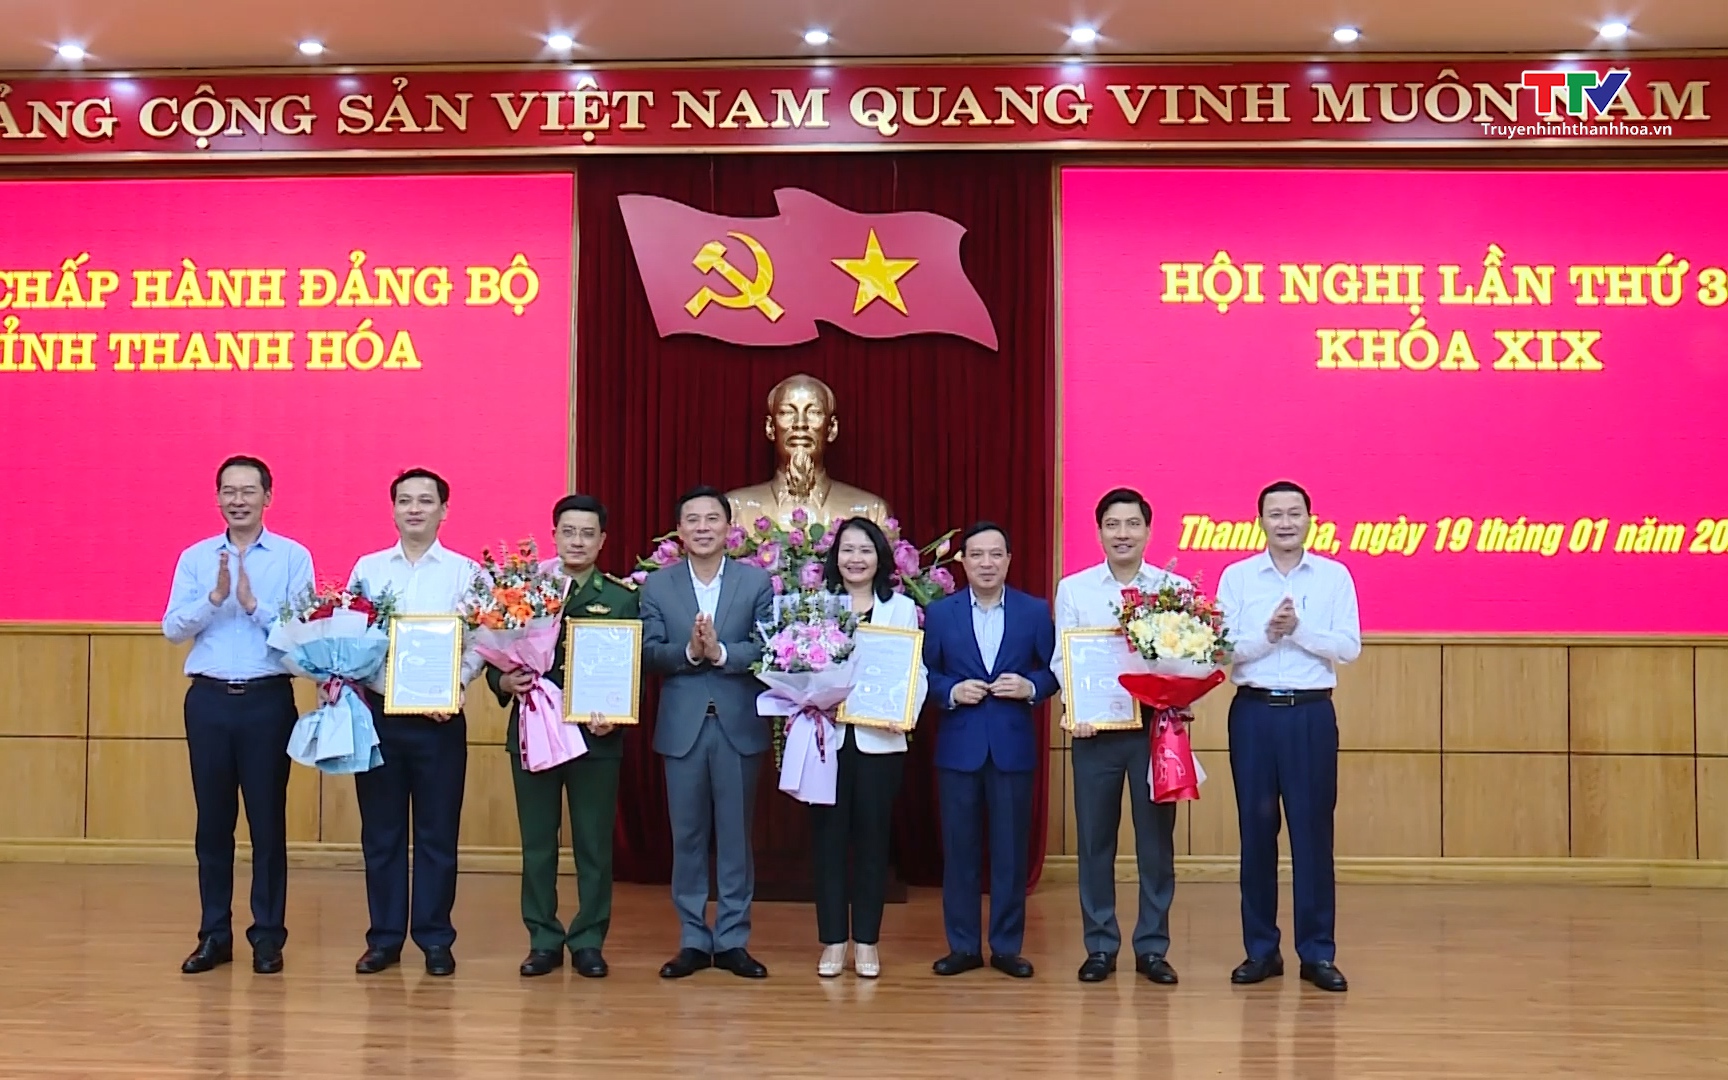 Ban Bí thư chỉ định nhân sự tham gia Ban Chấp hành Đảng bộ tỉnh Thanh Hóa khoá XIX